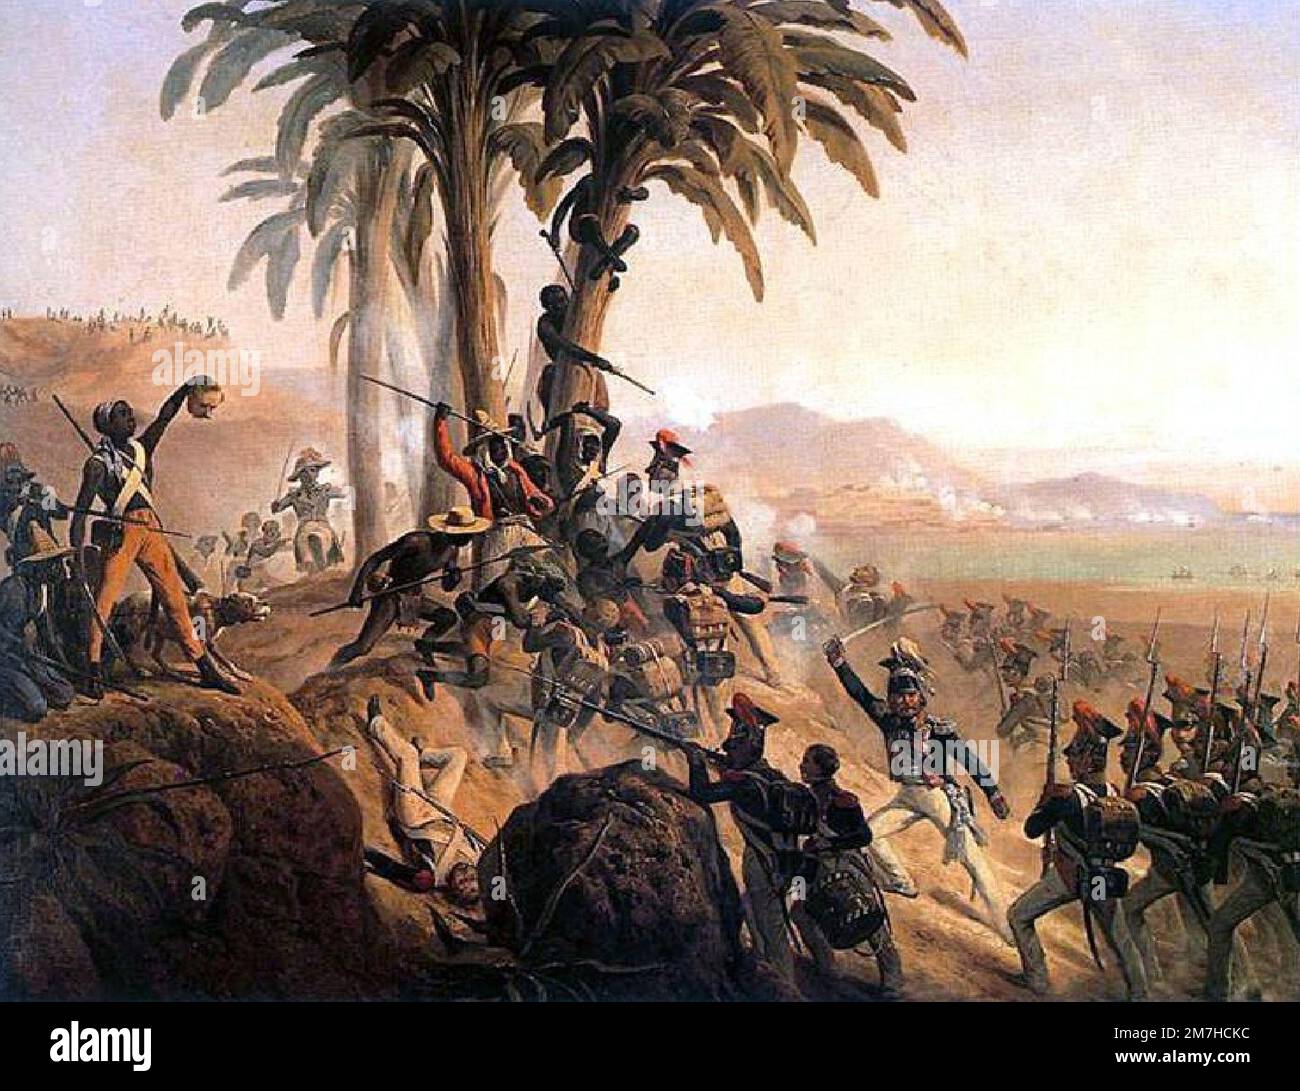 La bataille de Palm Tree Hill pendant la révolution haïtienne. Cette révolution a été le renversement violent et sanglant de la classe dirigeante blanche d'Haïti lors d'un soulèvement des esclaves. Banque D'Images